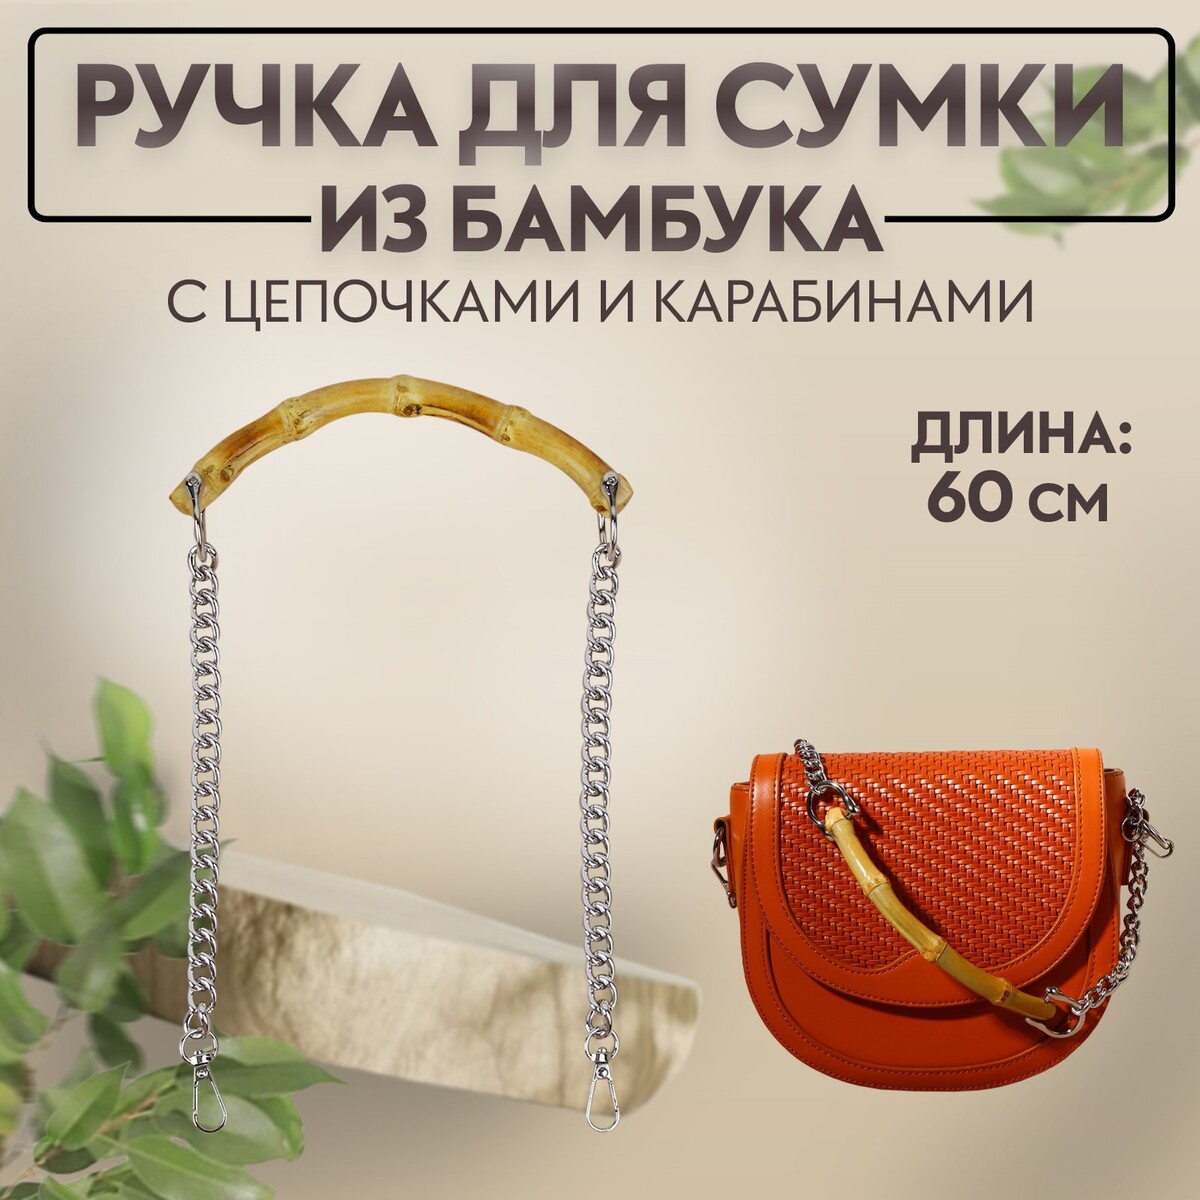 Ручка для сумки, бамбук, с цепочками и карабинами, 60 см, цвет серебряный ручка для сумки с цепочками и карабинами 120 × 1 8 см